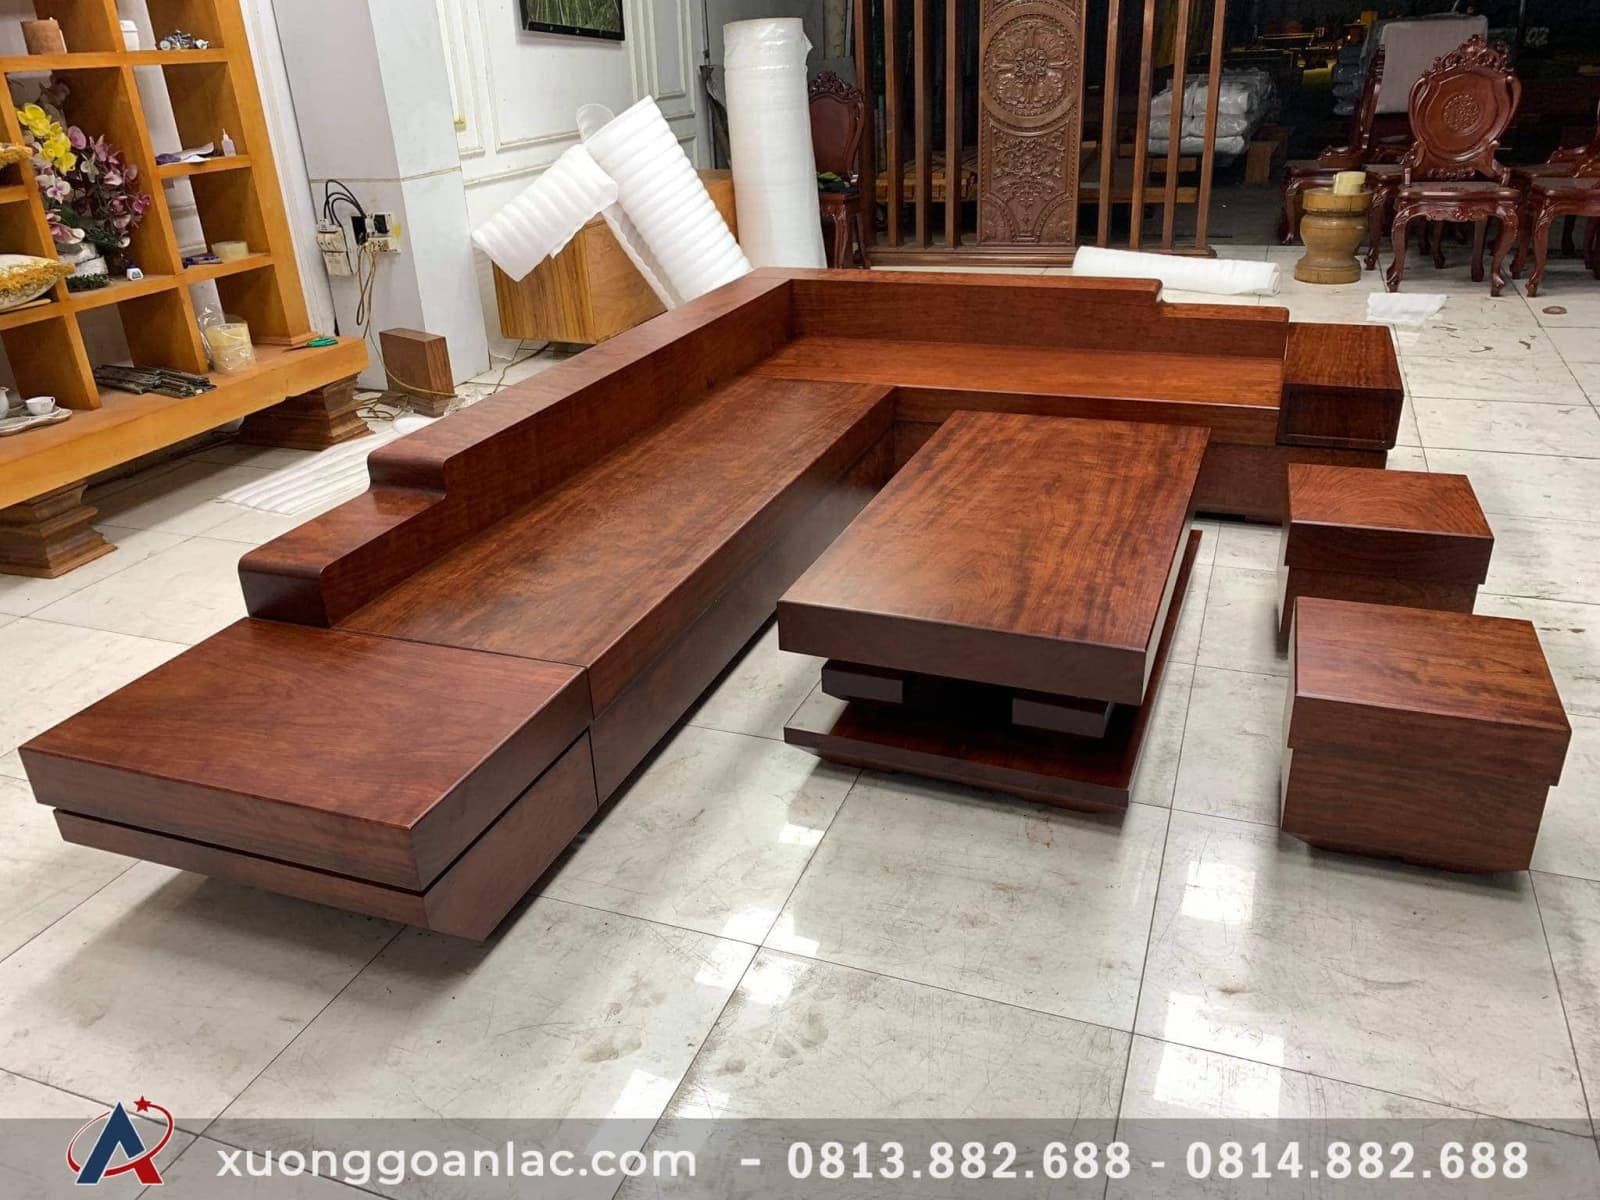 Với chất lượng vượt trội của gỗ cẩm hồng, chiếc sofa này mang đến một không gian sống quý phái, đầy sang trọng và đẳng cấp. Hãy cùng đắm mình trong không gian nội thất đẳng cấp, và cảm nhận vẻ đẹp tinh tế của chiếc sofa gỗ cẩm hồng này nhé!